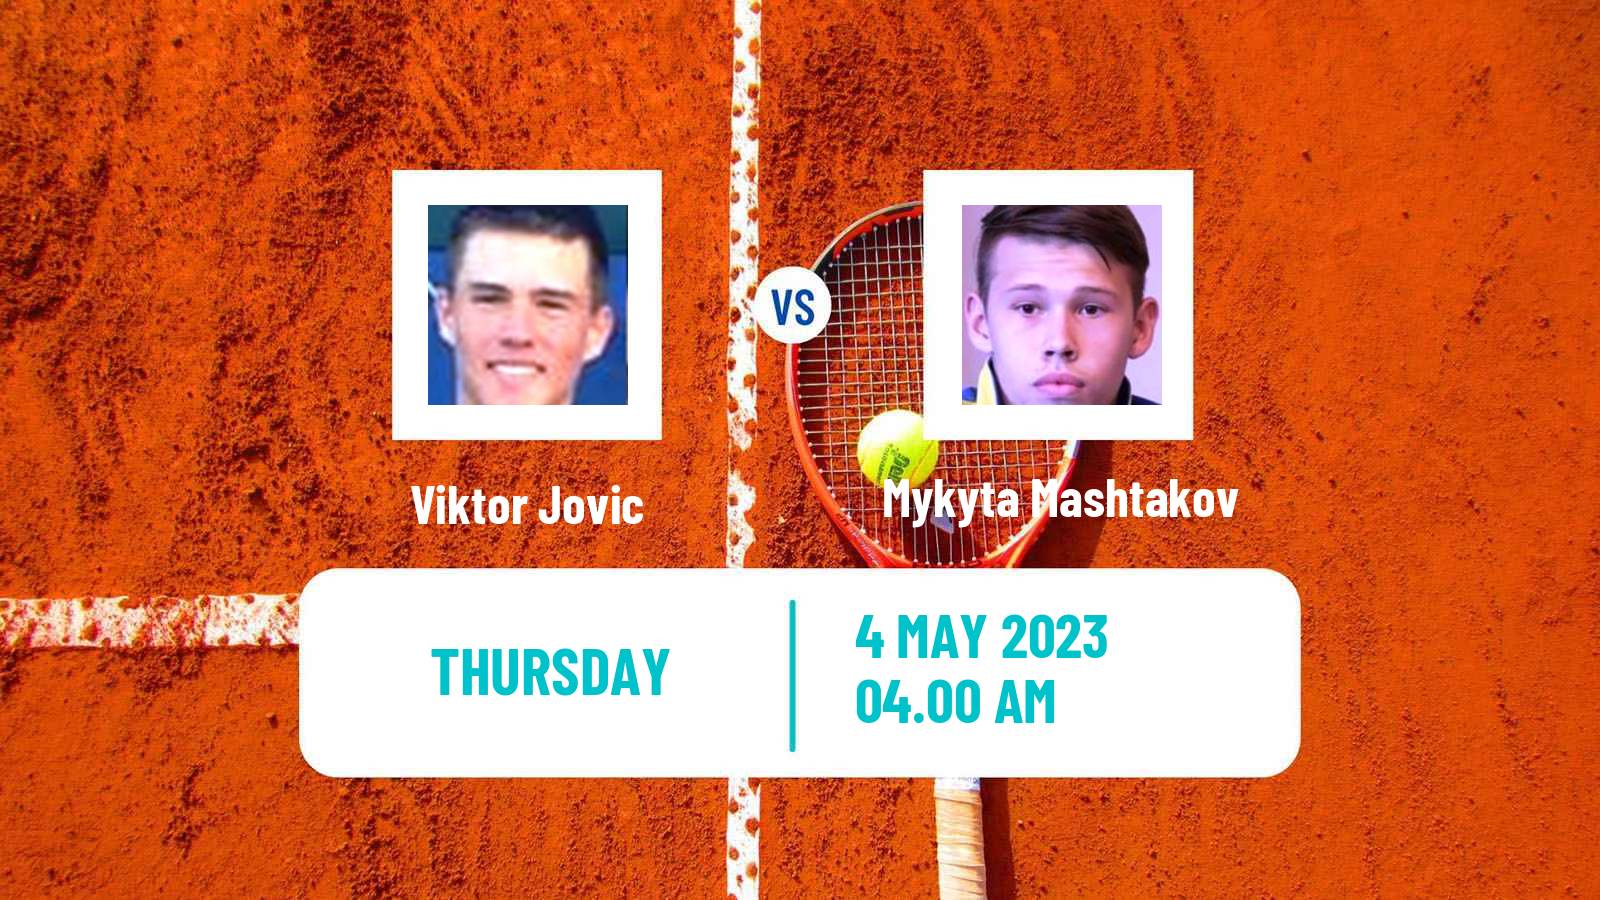 Tennis ITF Tournaments Viktor Jovic - Mykyta Mashtakov